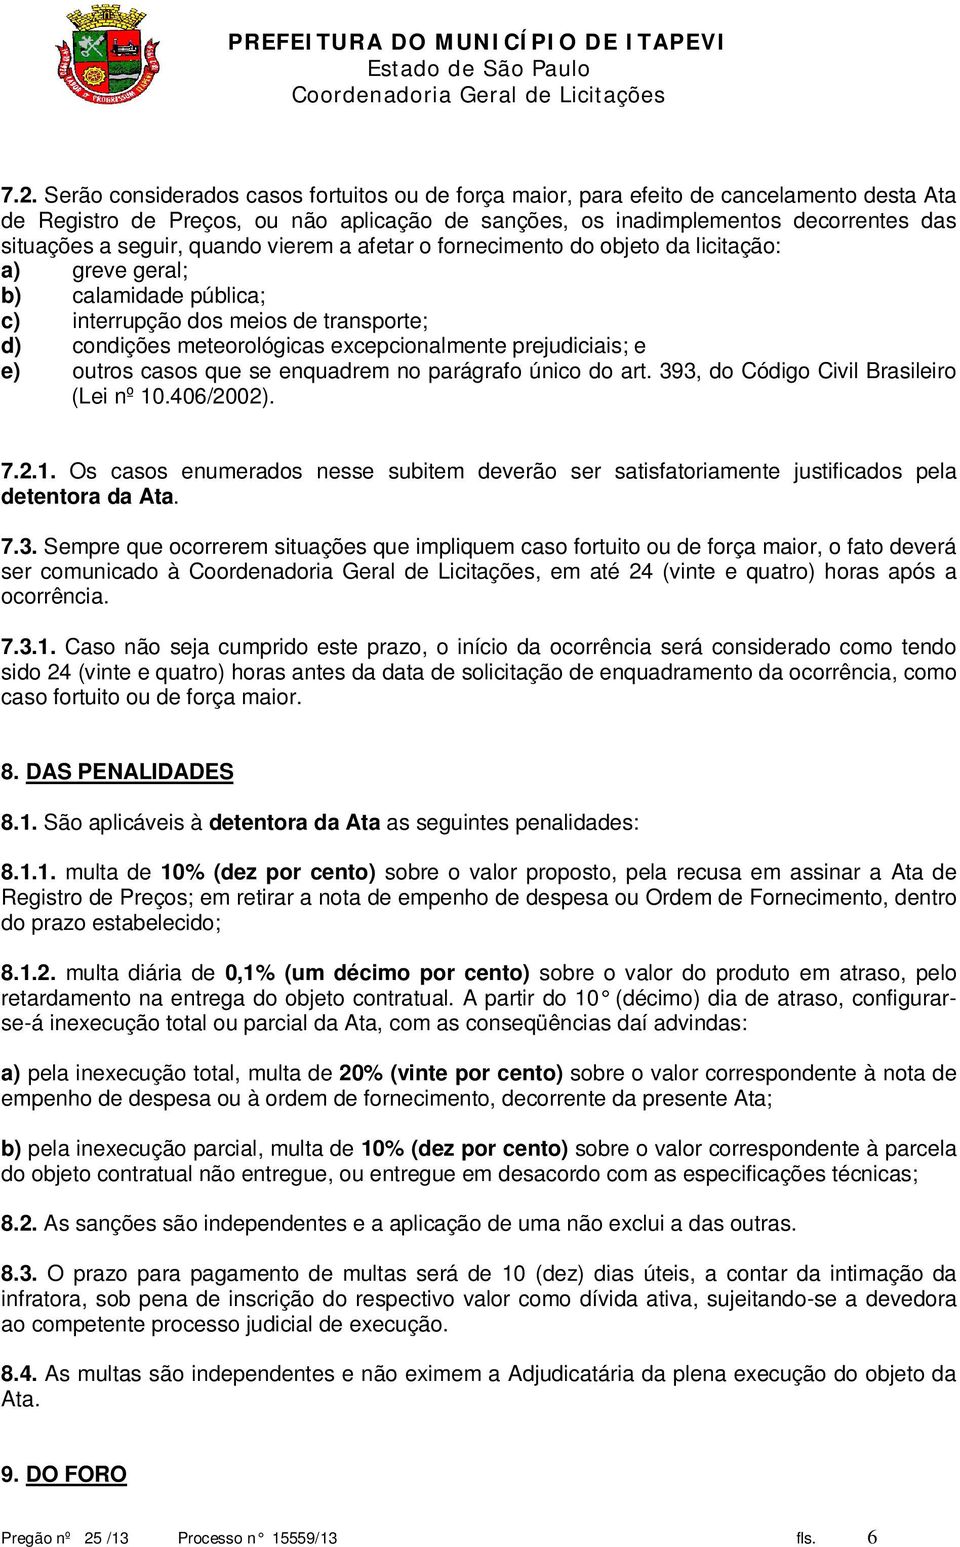 prejudiciais; e e) outros casos que se enquadrem no parágrafo único do art. 393, do Código Civil Brasileiro (Lei nº 10